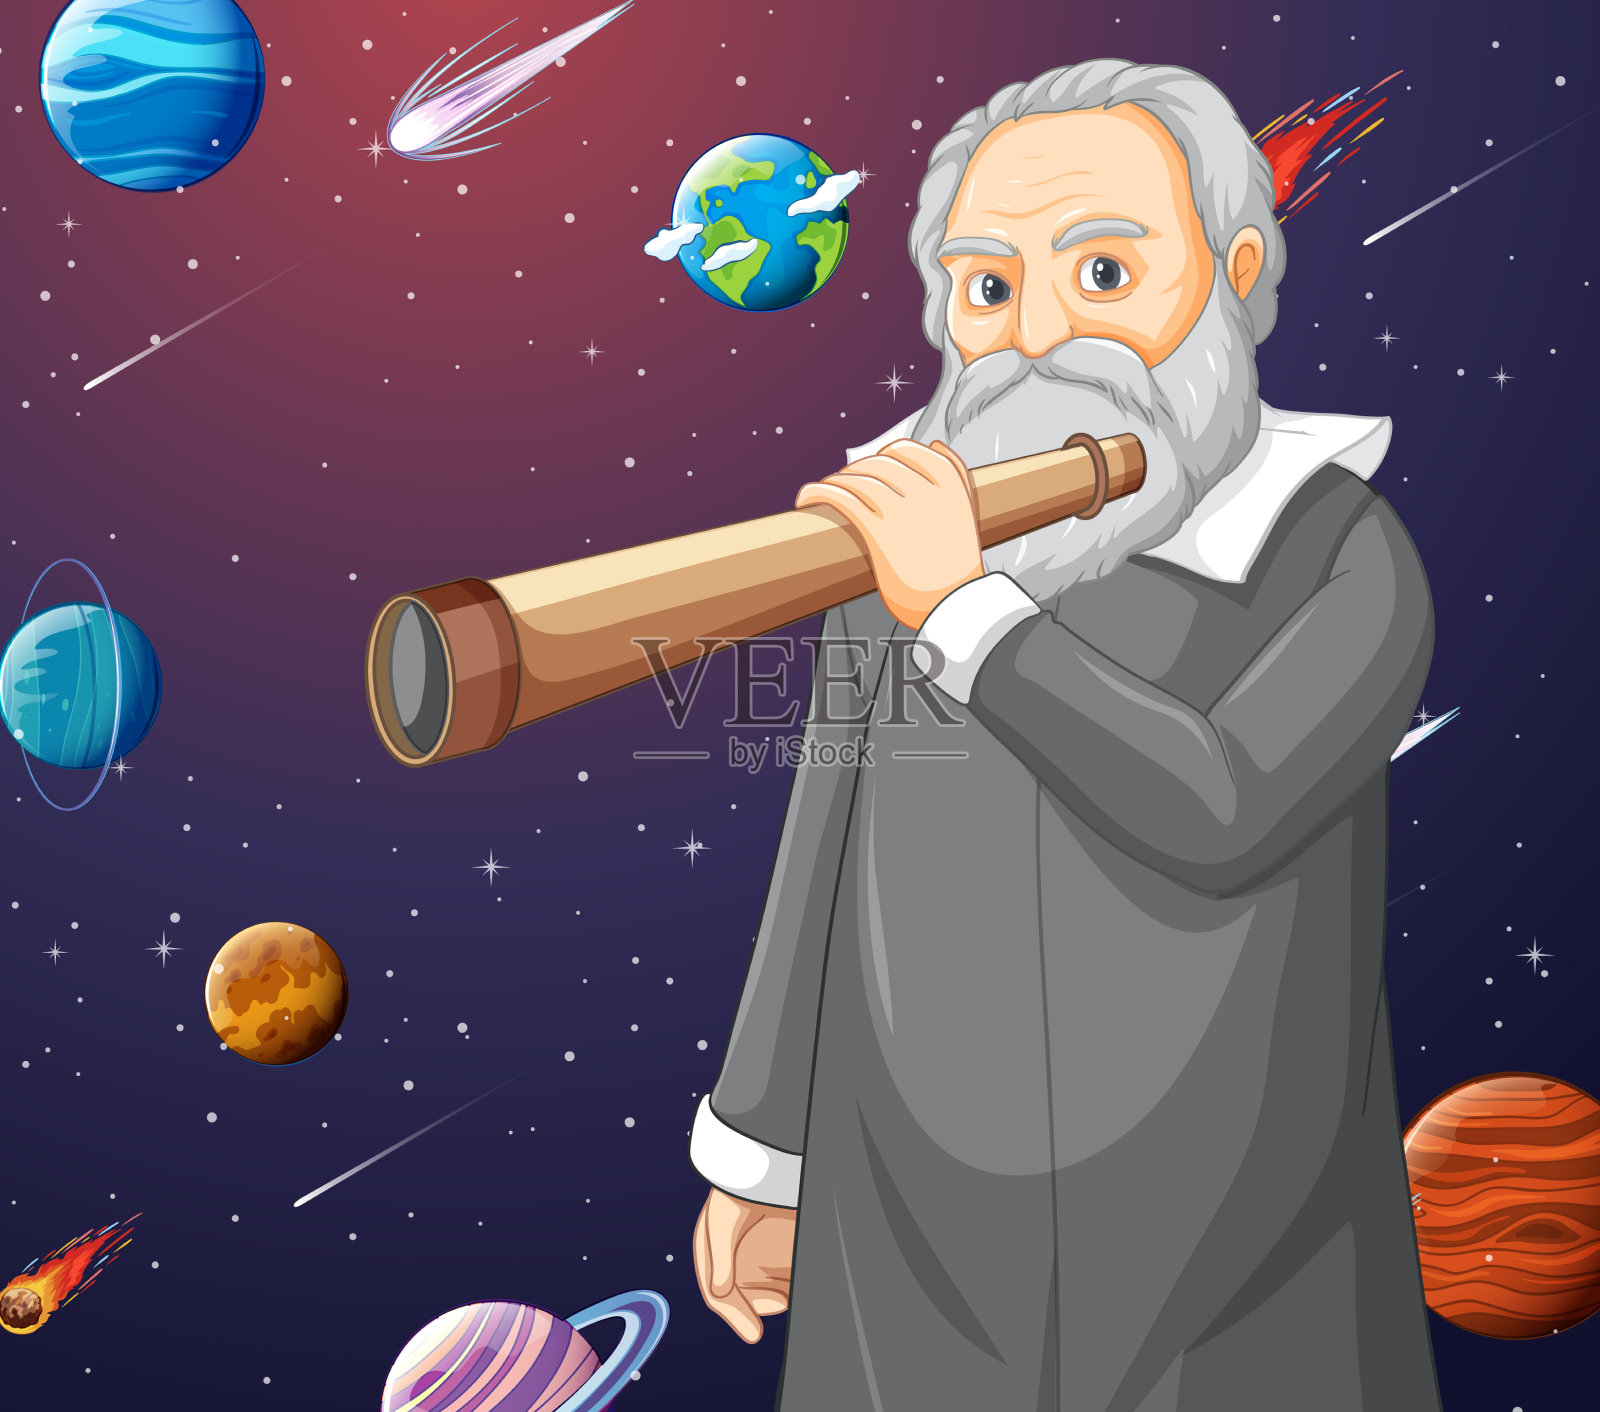 卡通风格的伽利略的肖像插画图片素材